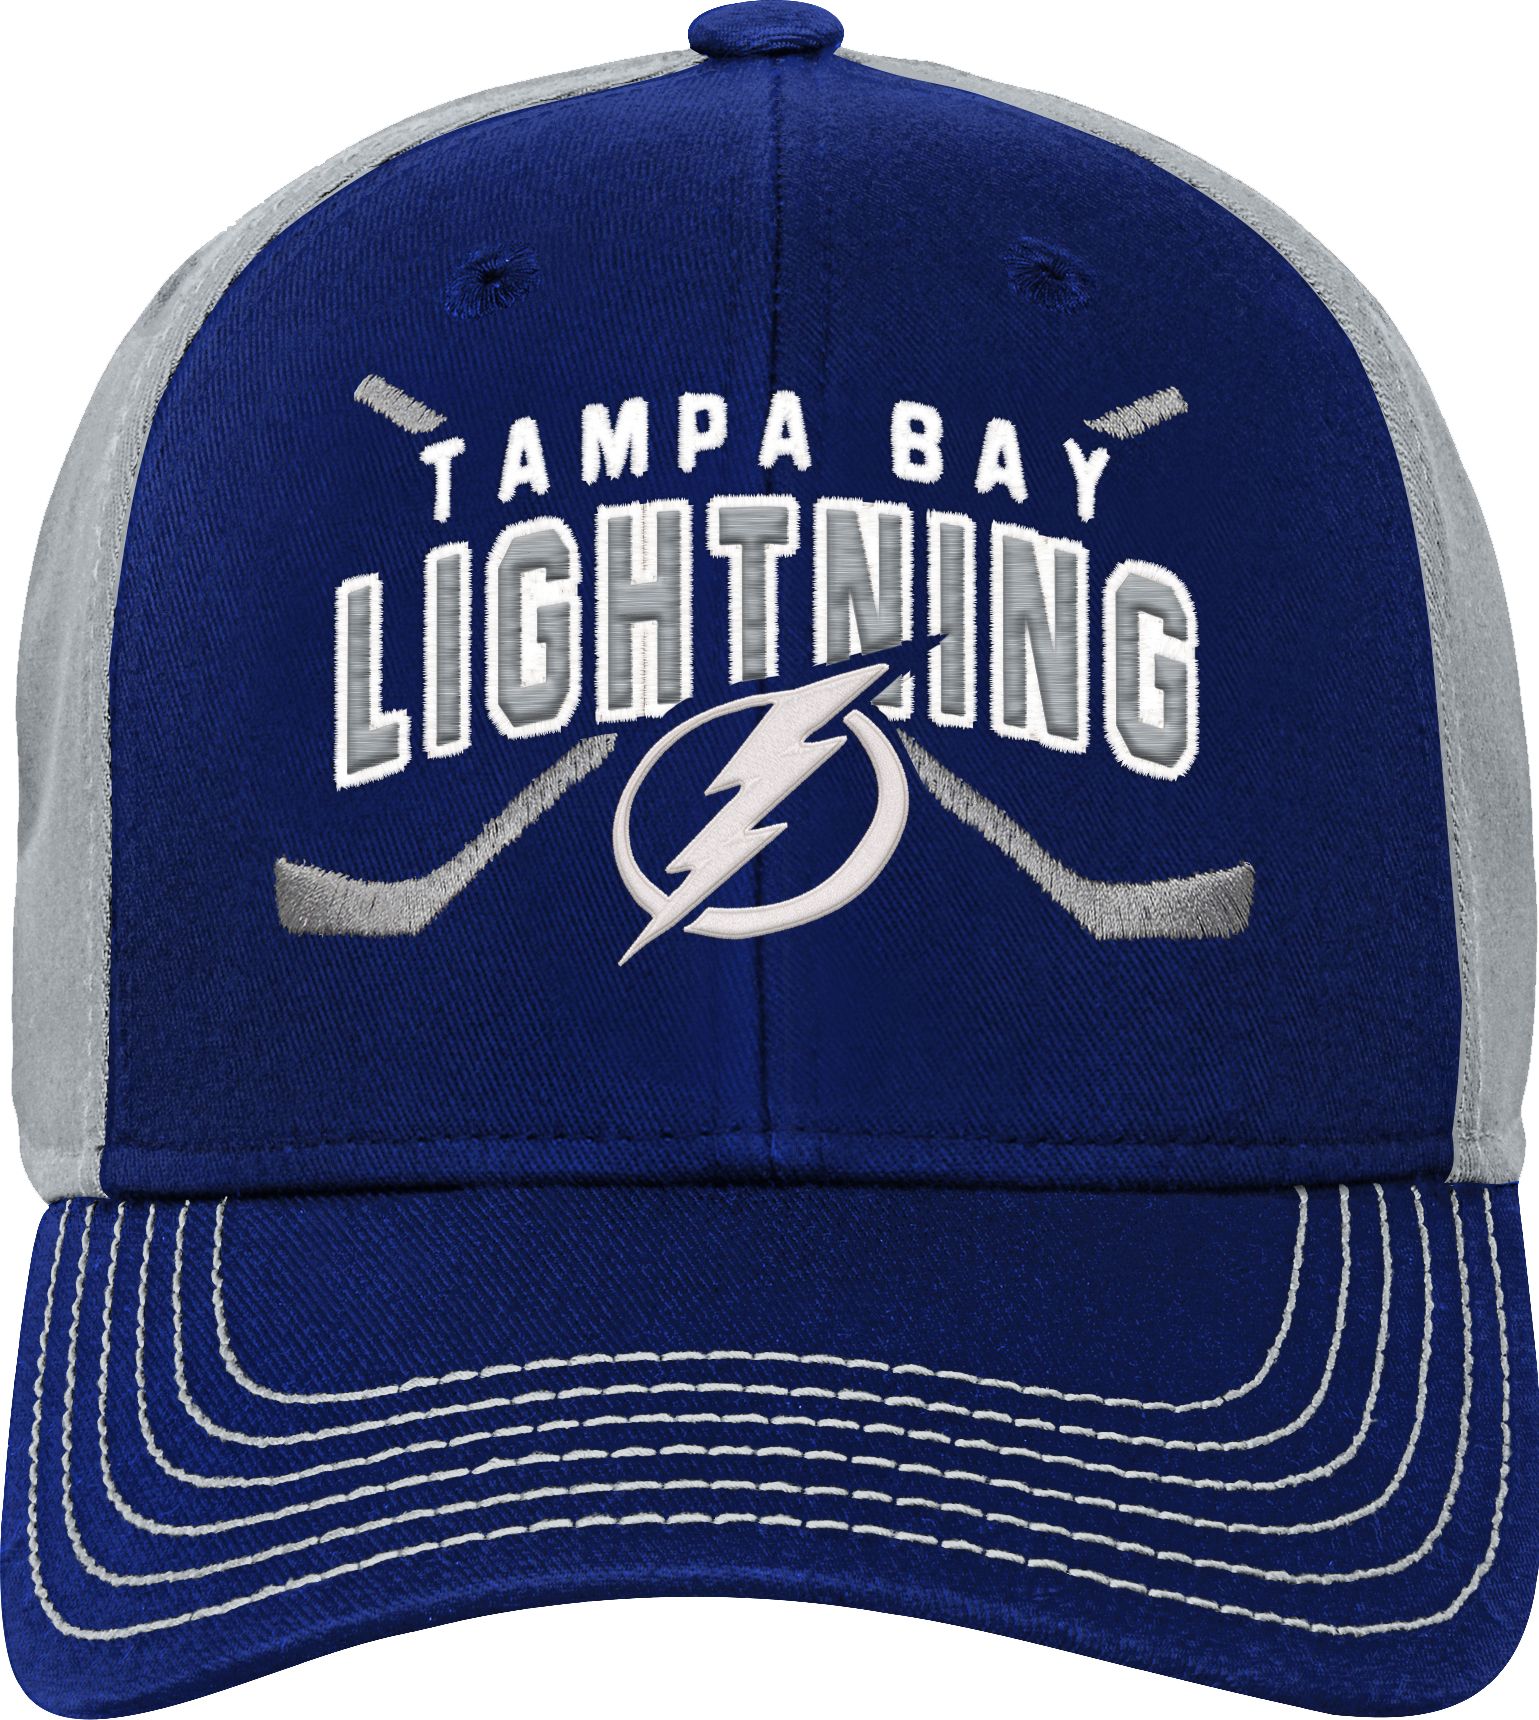 tampa bay lightning hat